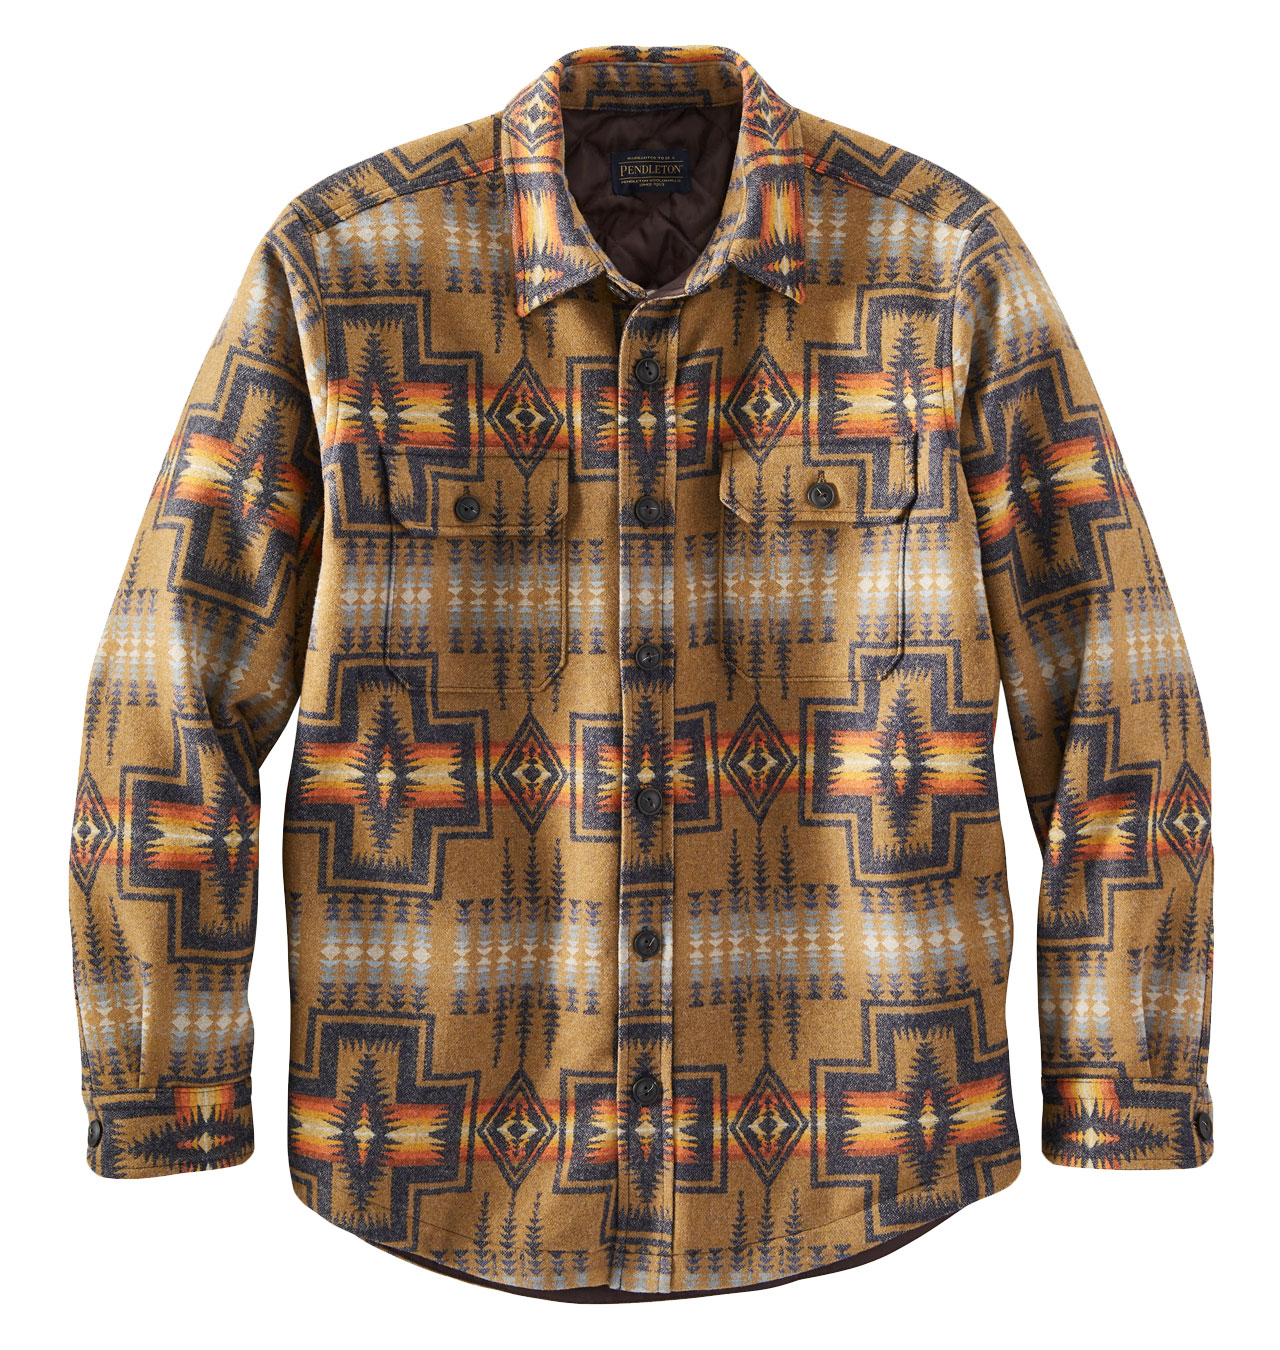 Pendleton - Harding Jacquard Quilted Shirt Jacket - Tan